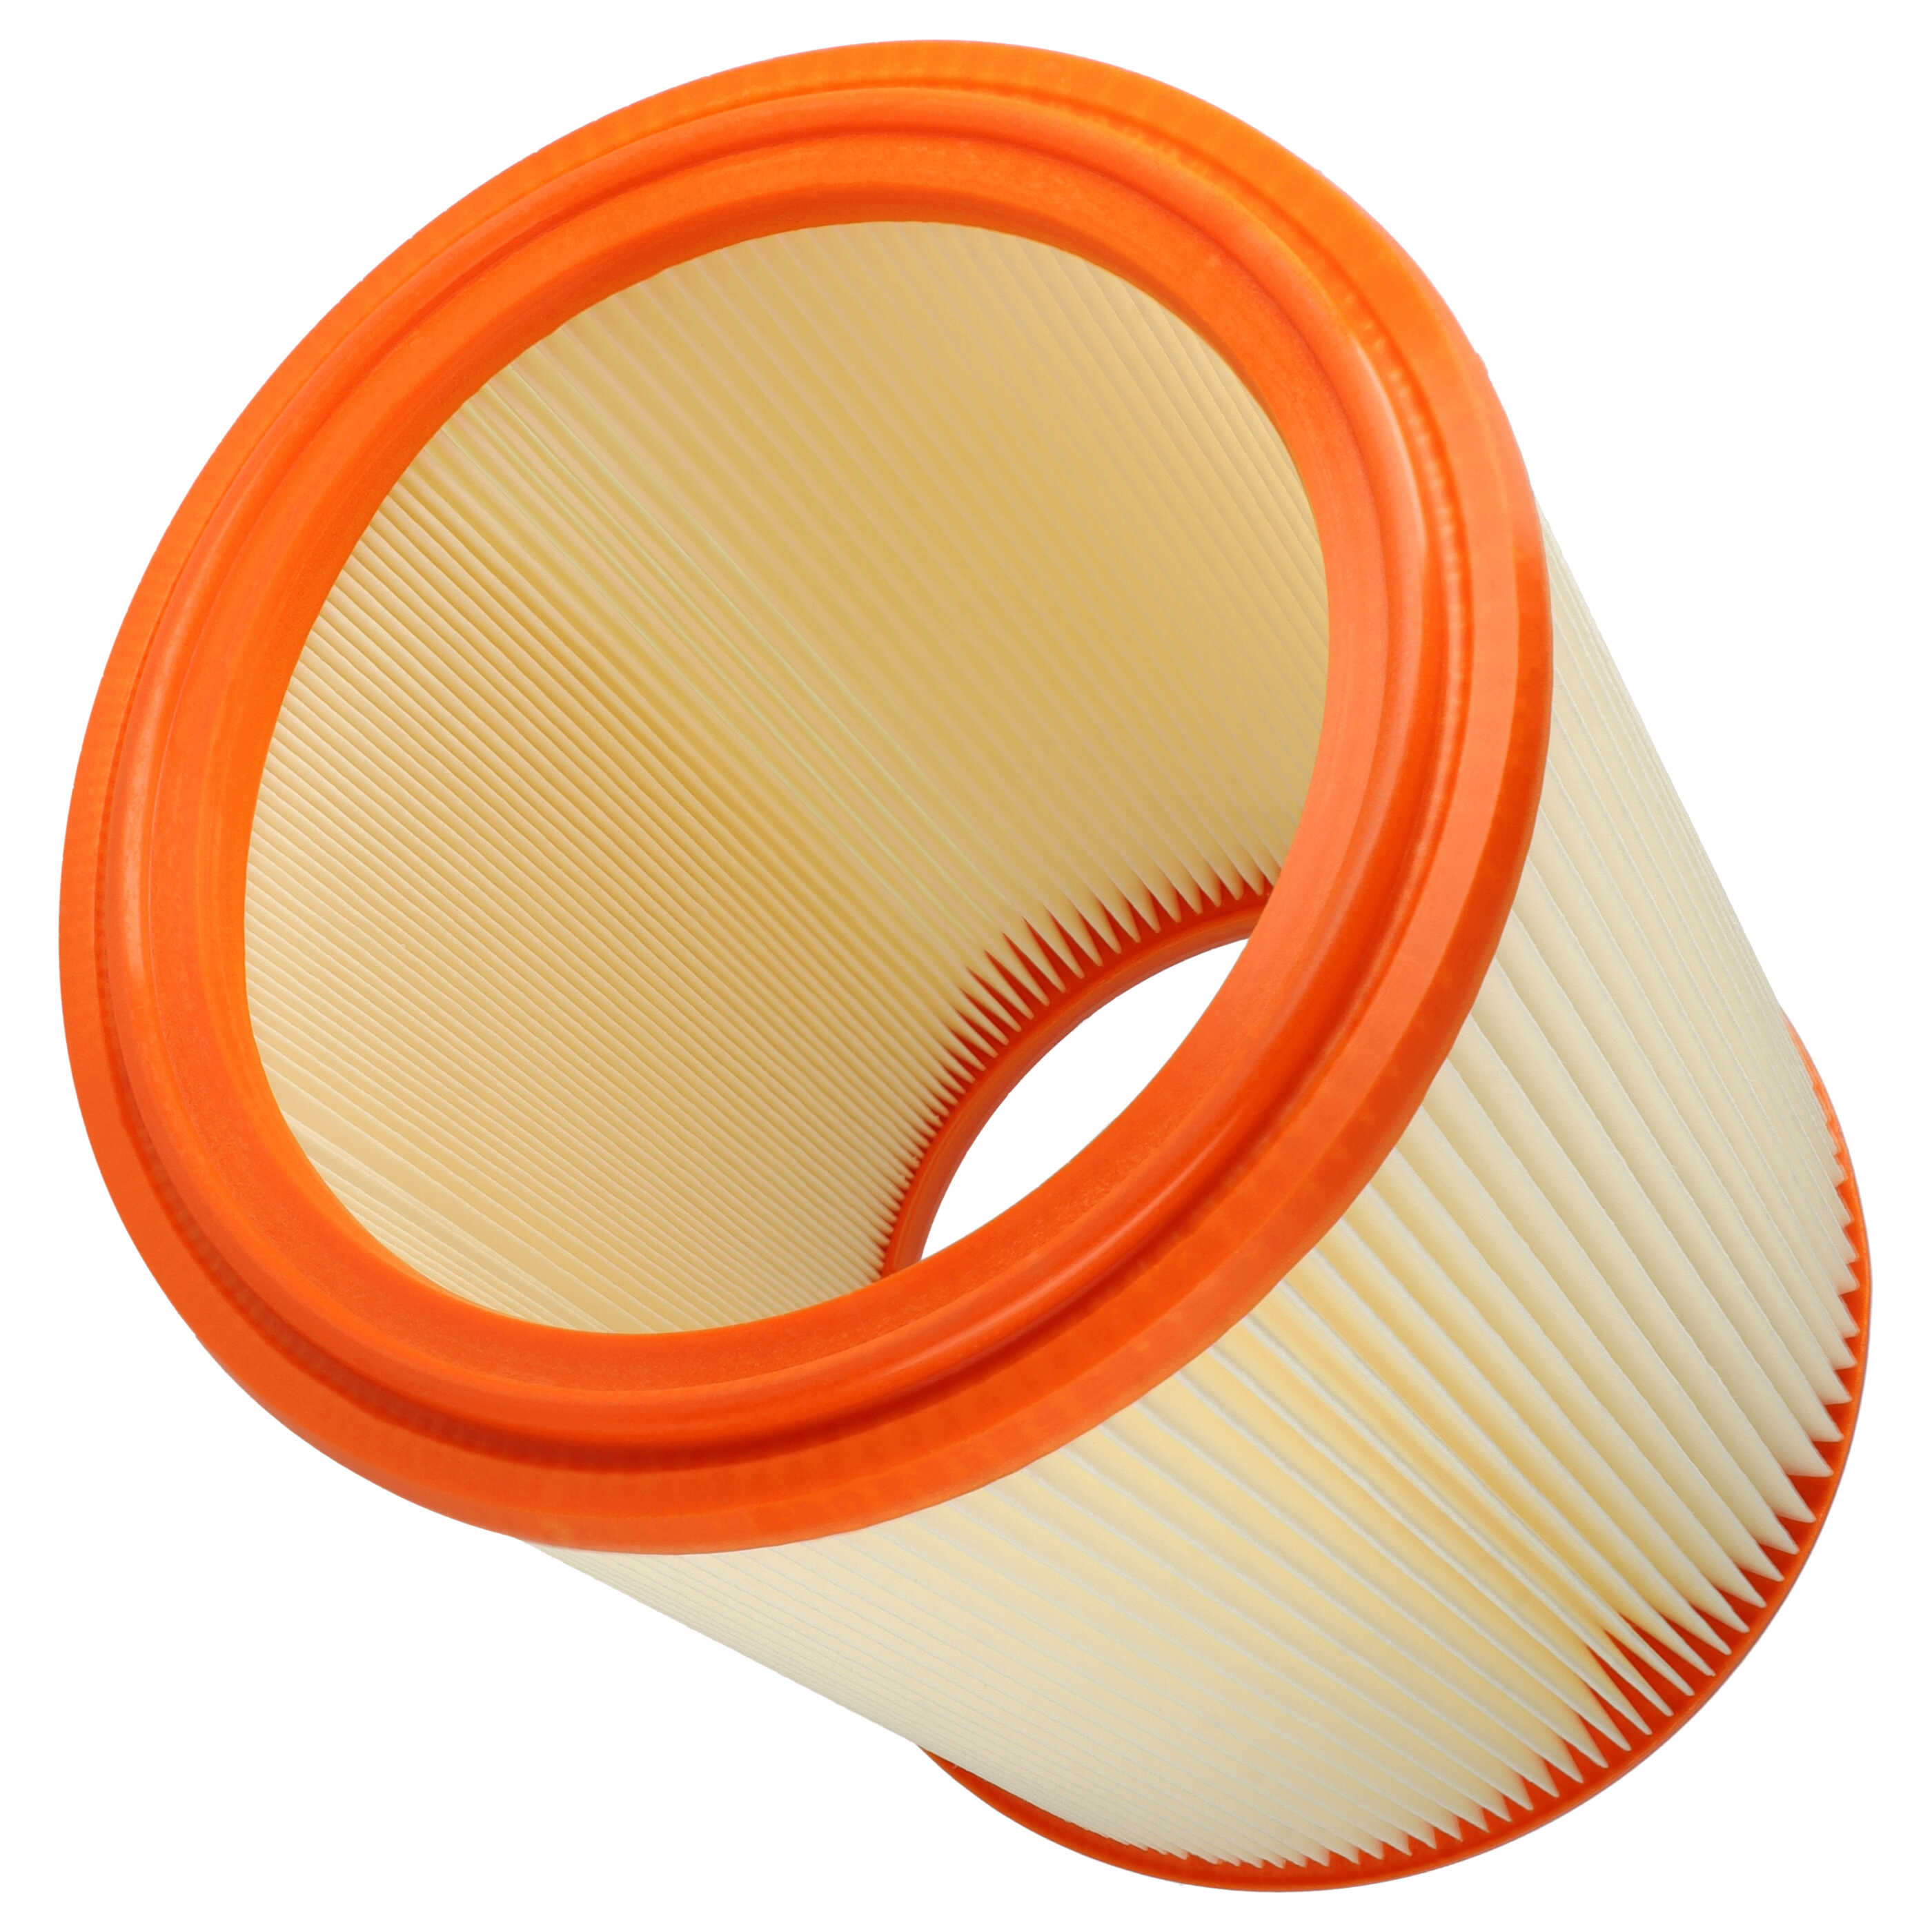 Filtre remplace Festool 486241 pour aspirateur - filtre à lamelles